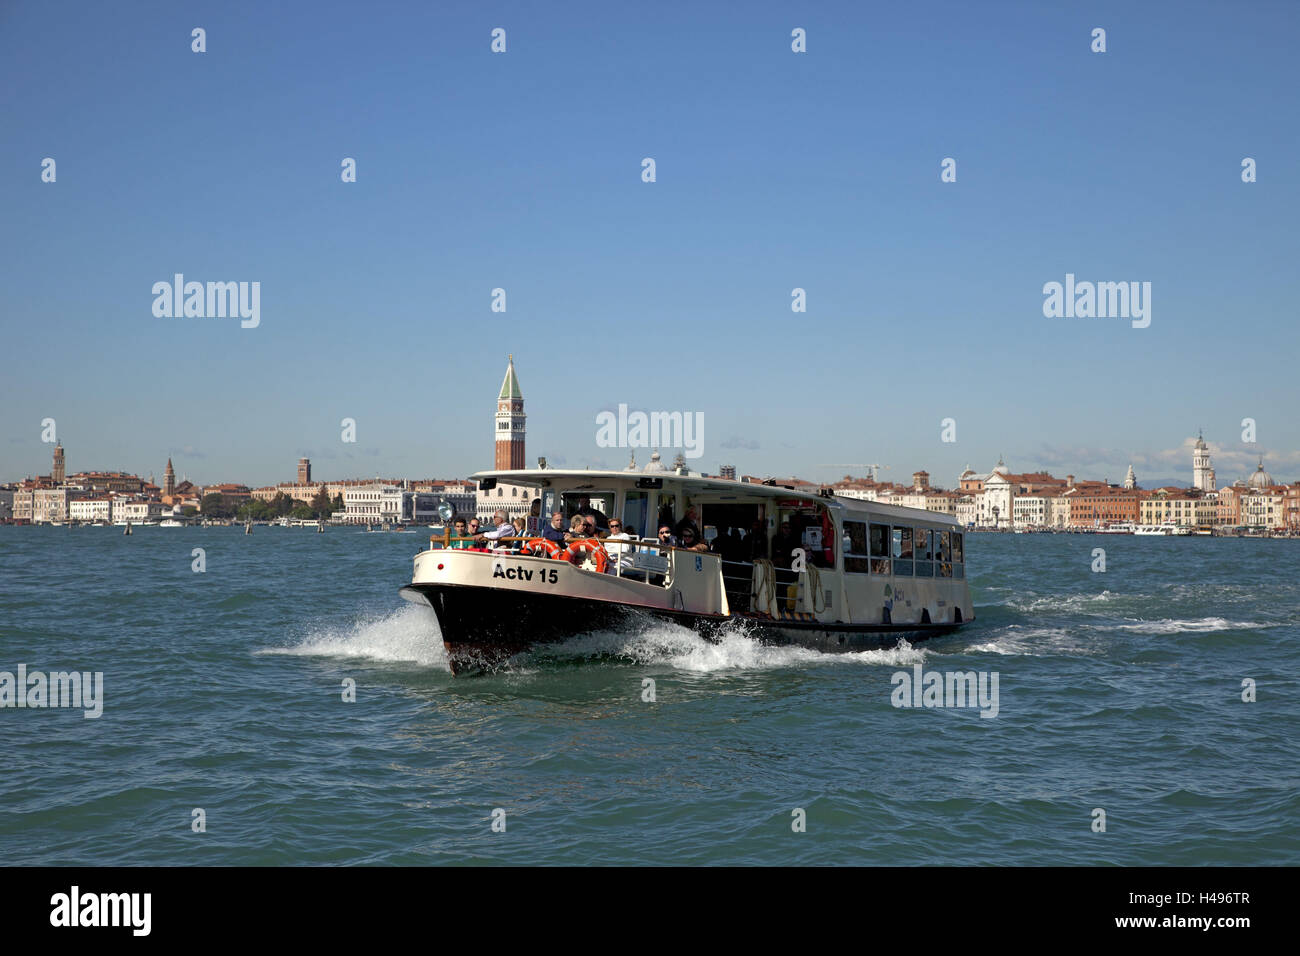 Venice, Vaporetti, channel, ship, Stock Photo